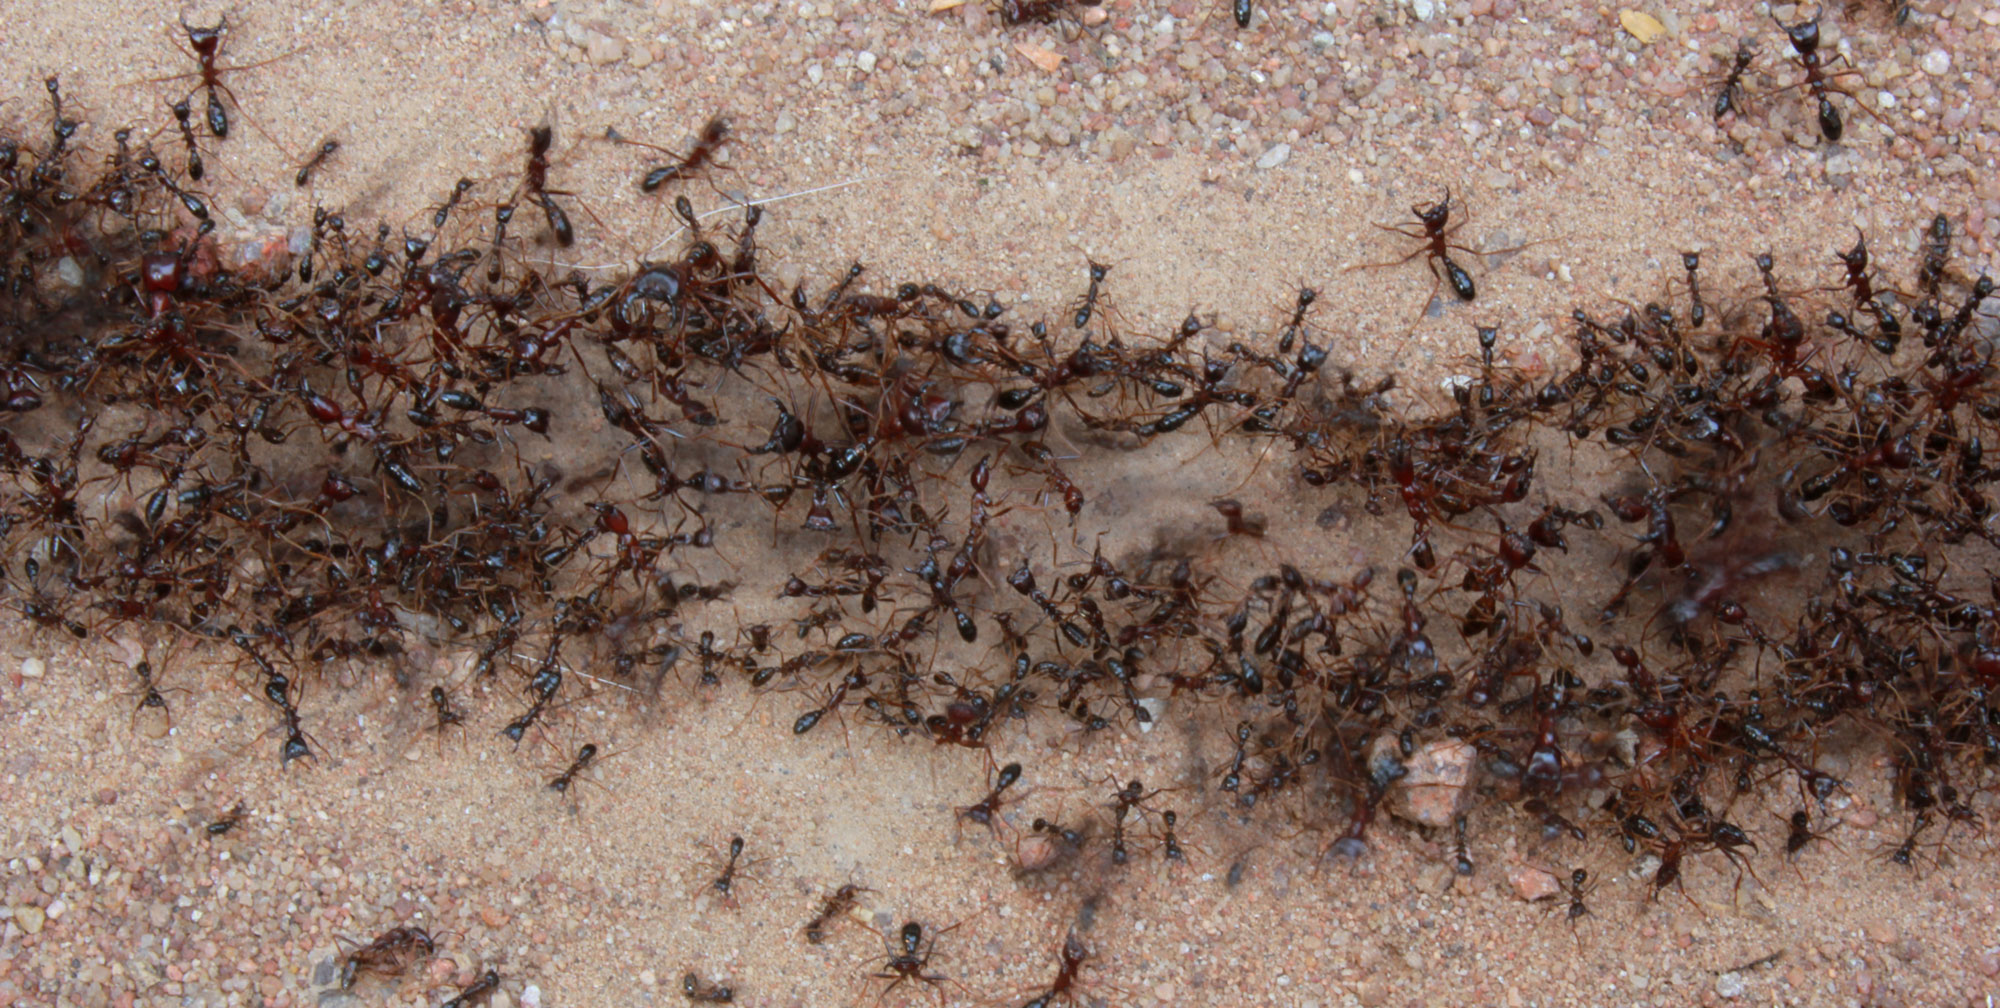 Кочевые муравьи: описание, особенности, интересные факты и отзывы